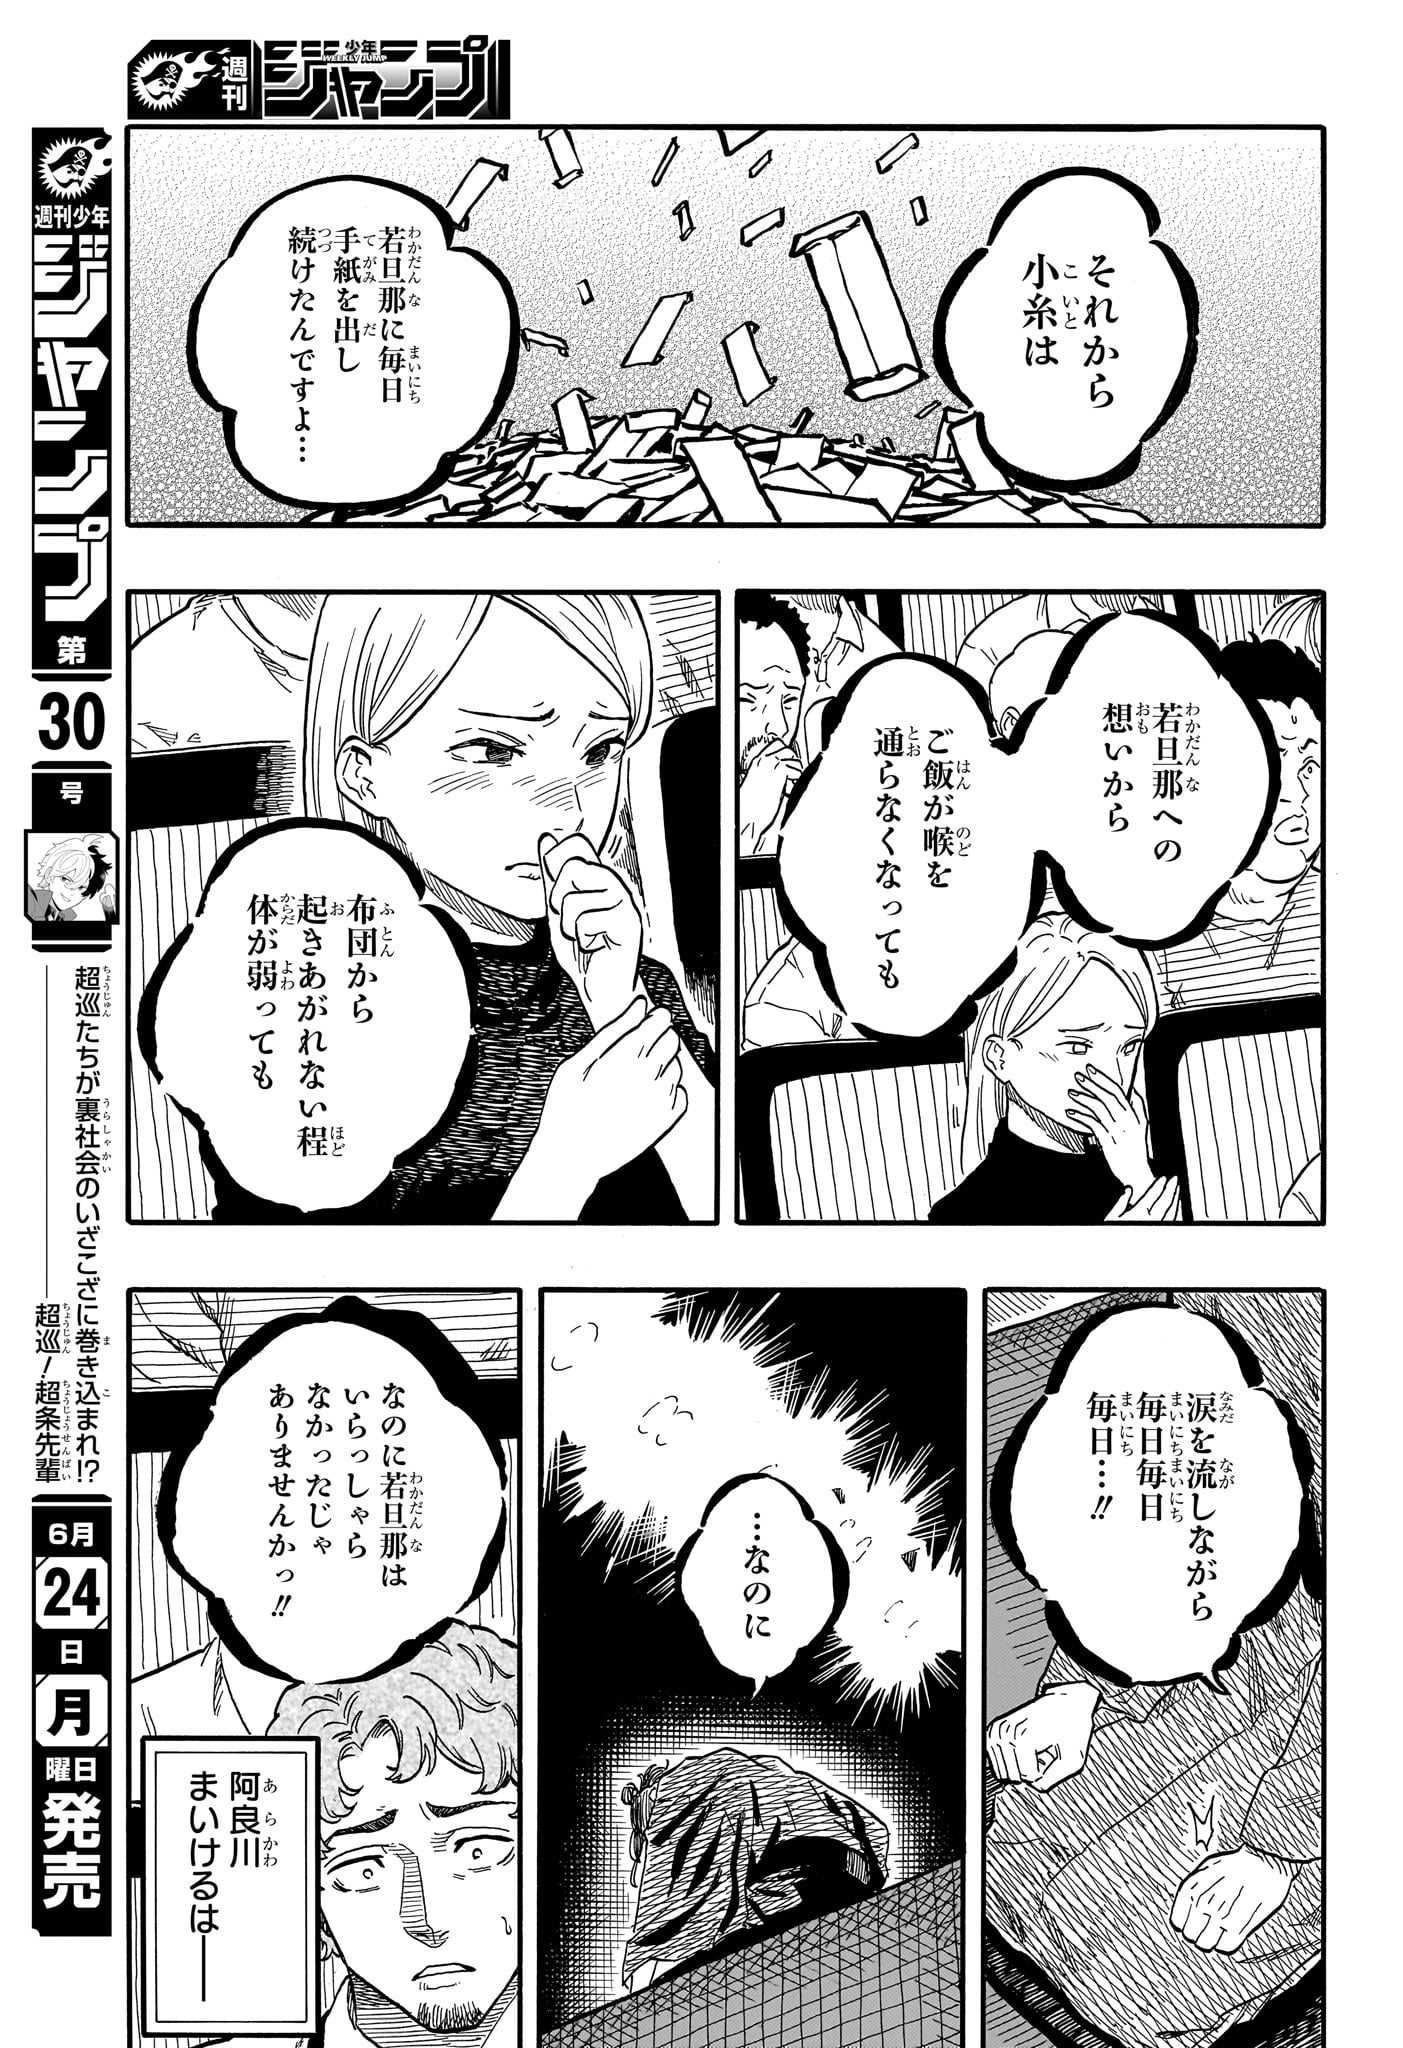 Akane-Banashi - Chapter 114 - Page 11